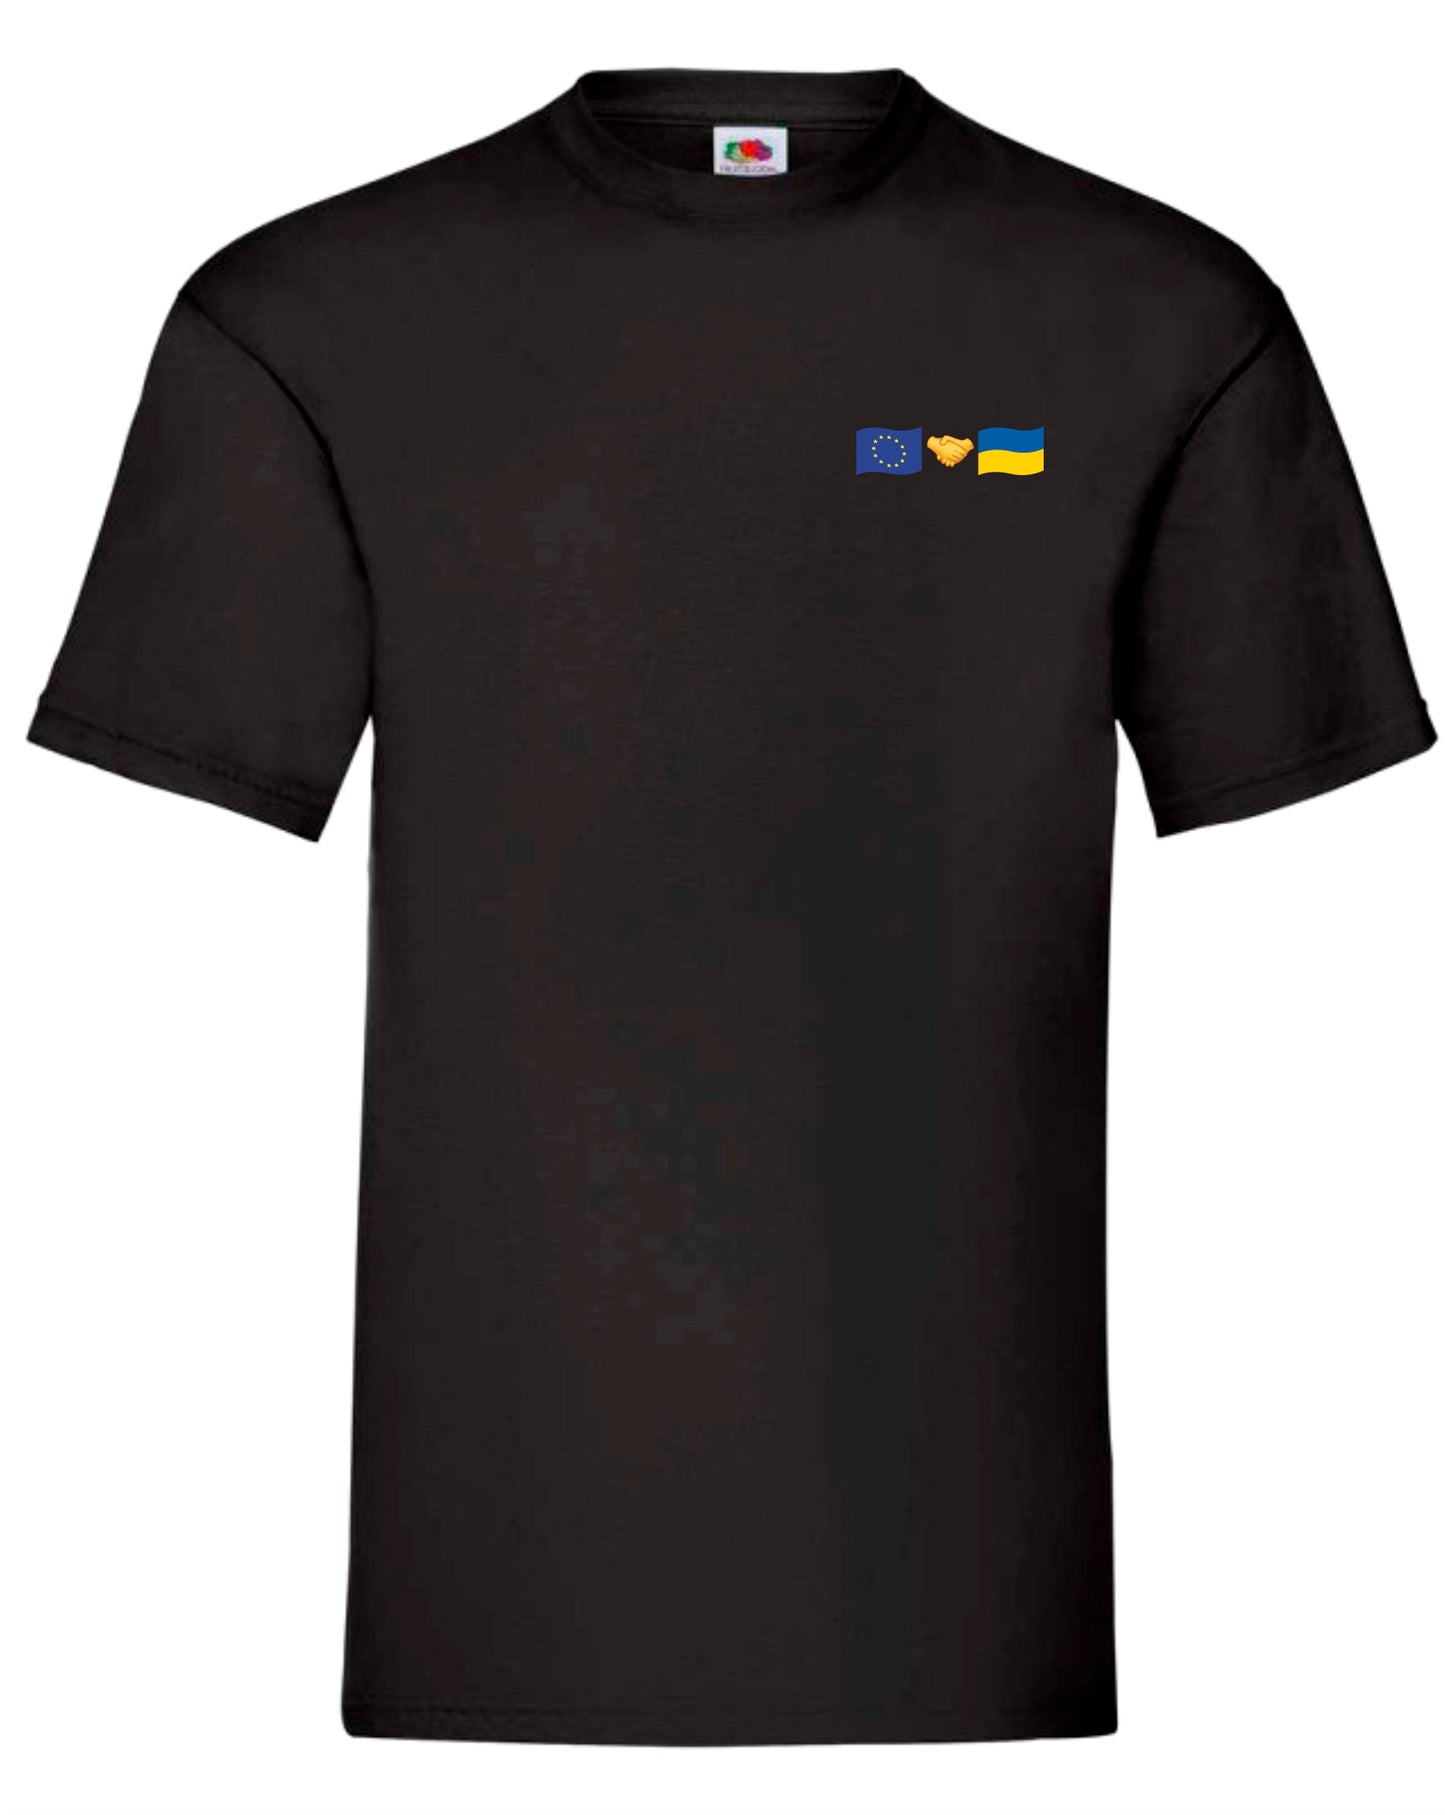 T-shirt EU + Ukraine (small logo)